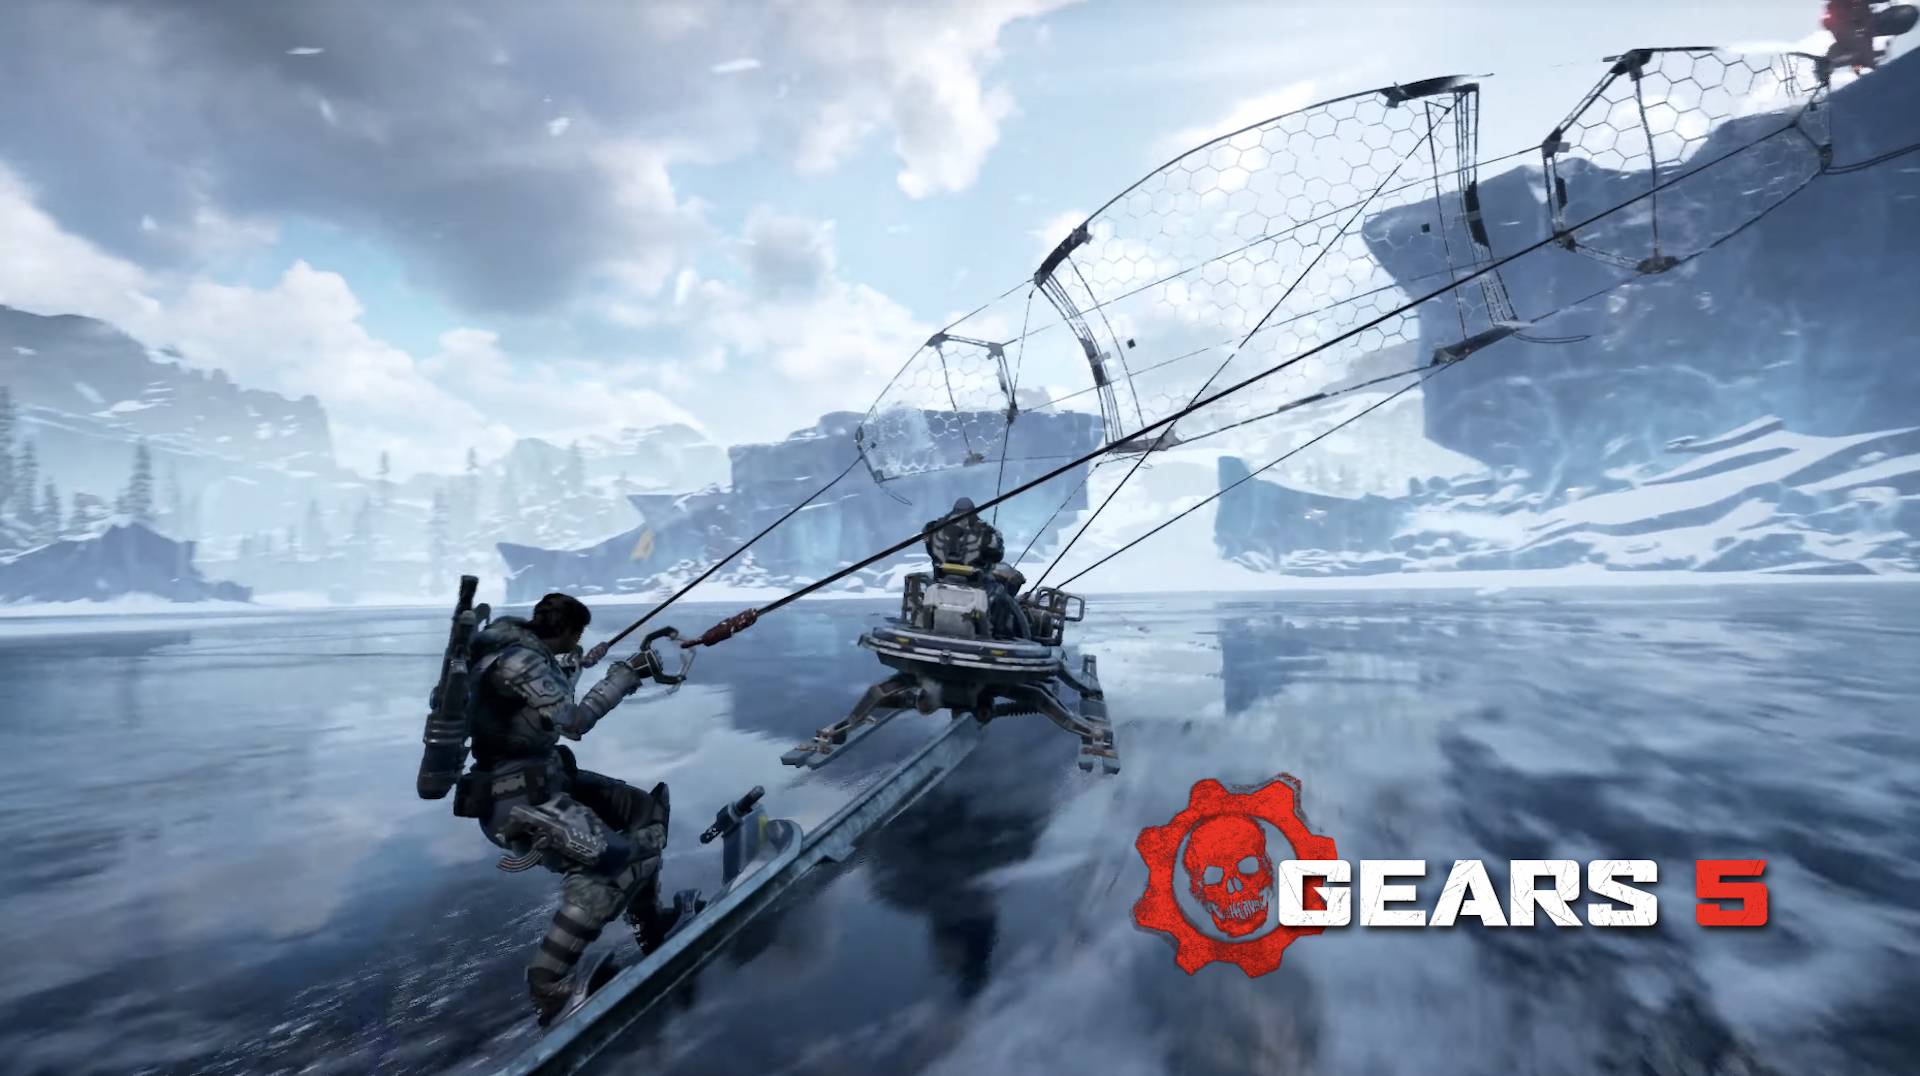 Gears 5: s öppna världsområde har inspirerats av spel som God of War